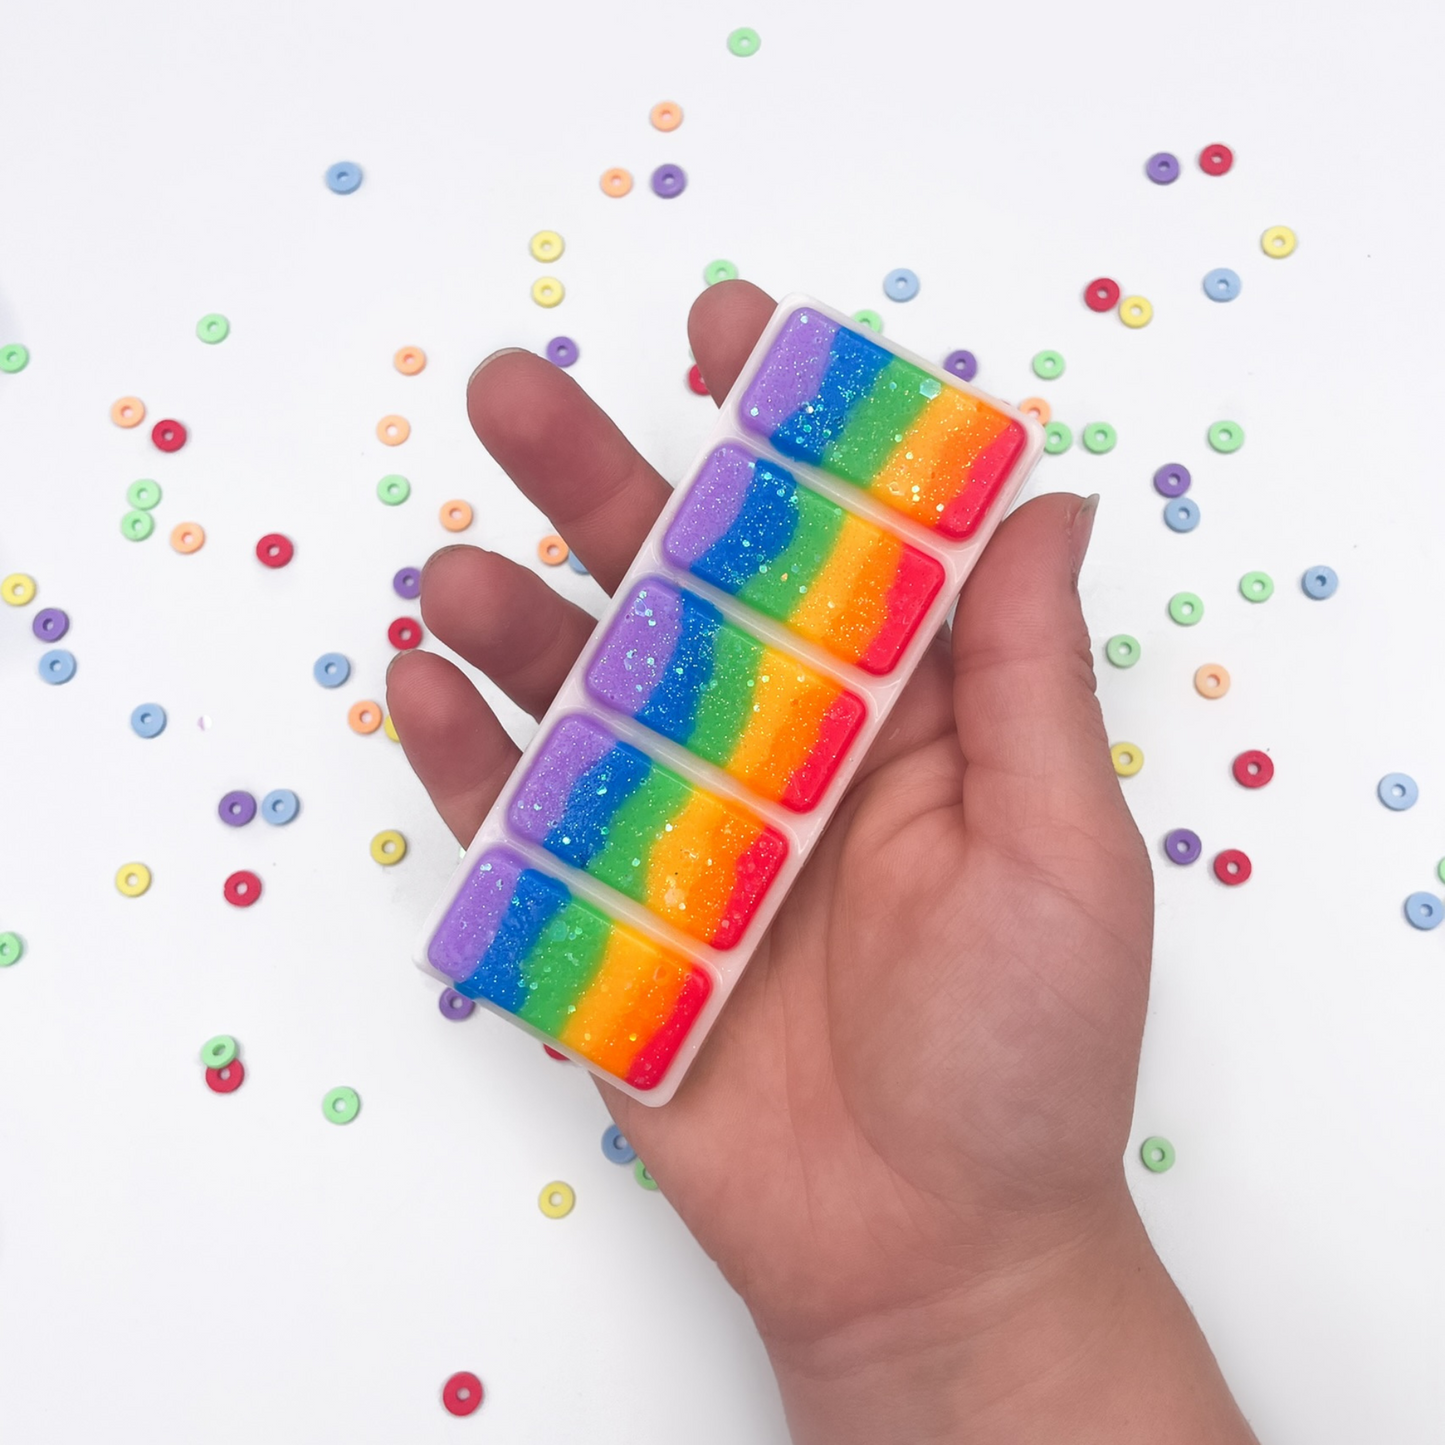 LGBTQ+ pride rainbow wax melt